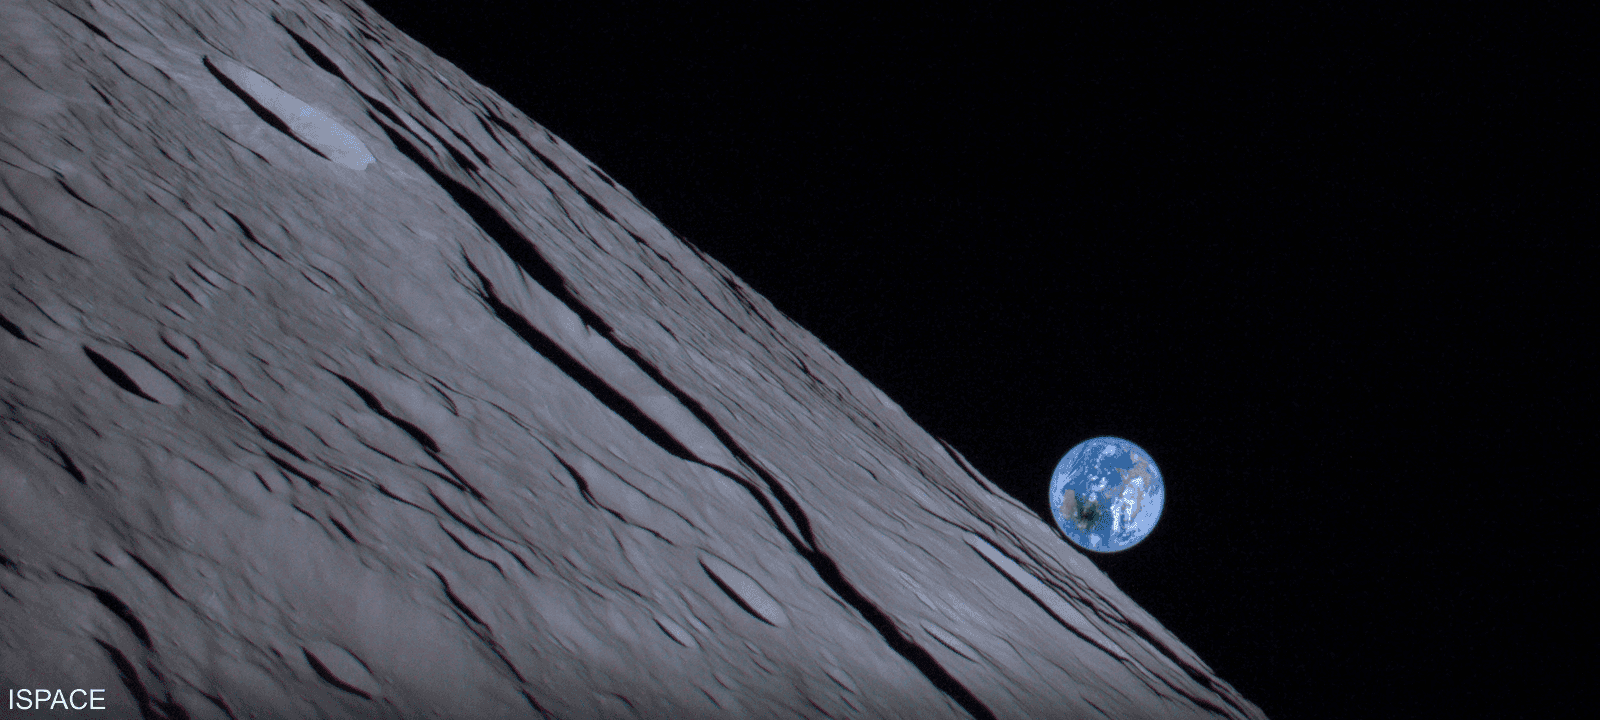 تم تغيير مسار هبوط المركبة الفضائية لحفرة في القمر